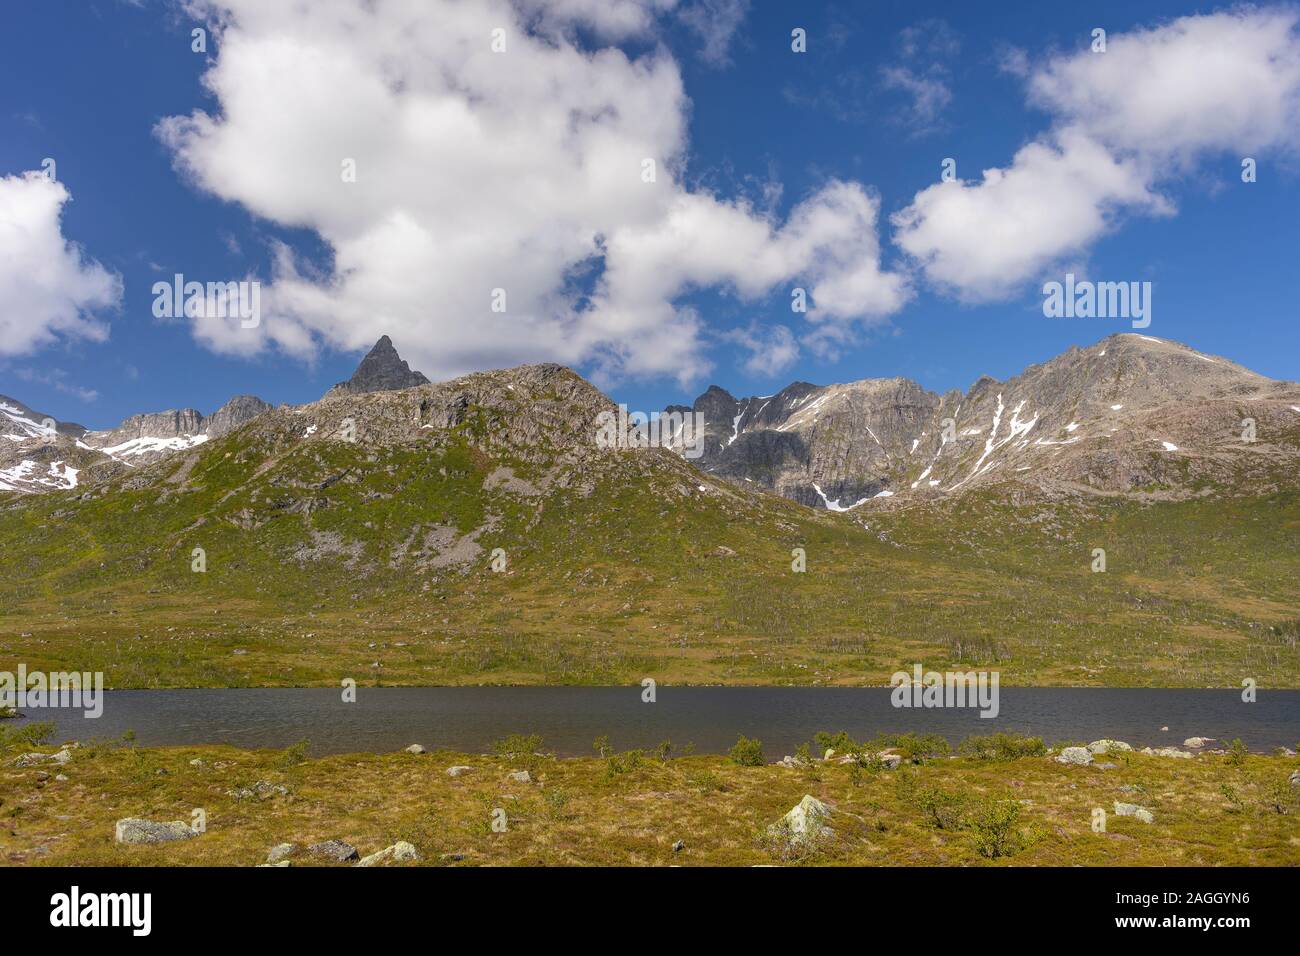 L'ÎLE DE KVALØYA, comté de Troms, NORVÈGE - paysage de montagne dans le nord de la Norvège. Banque D'Images